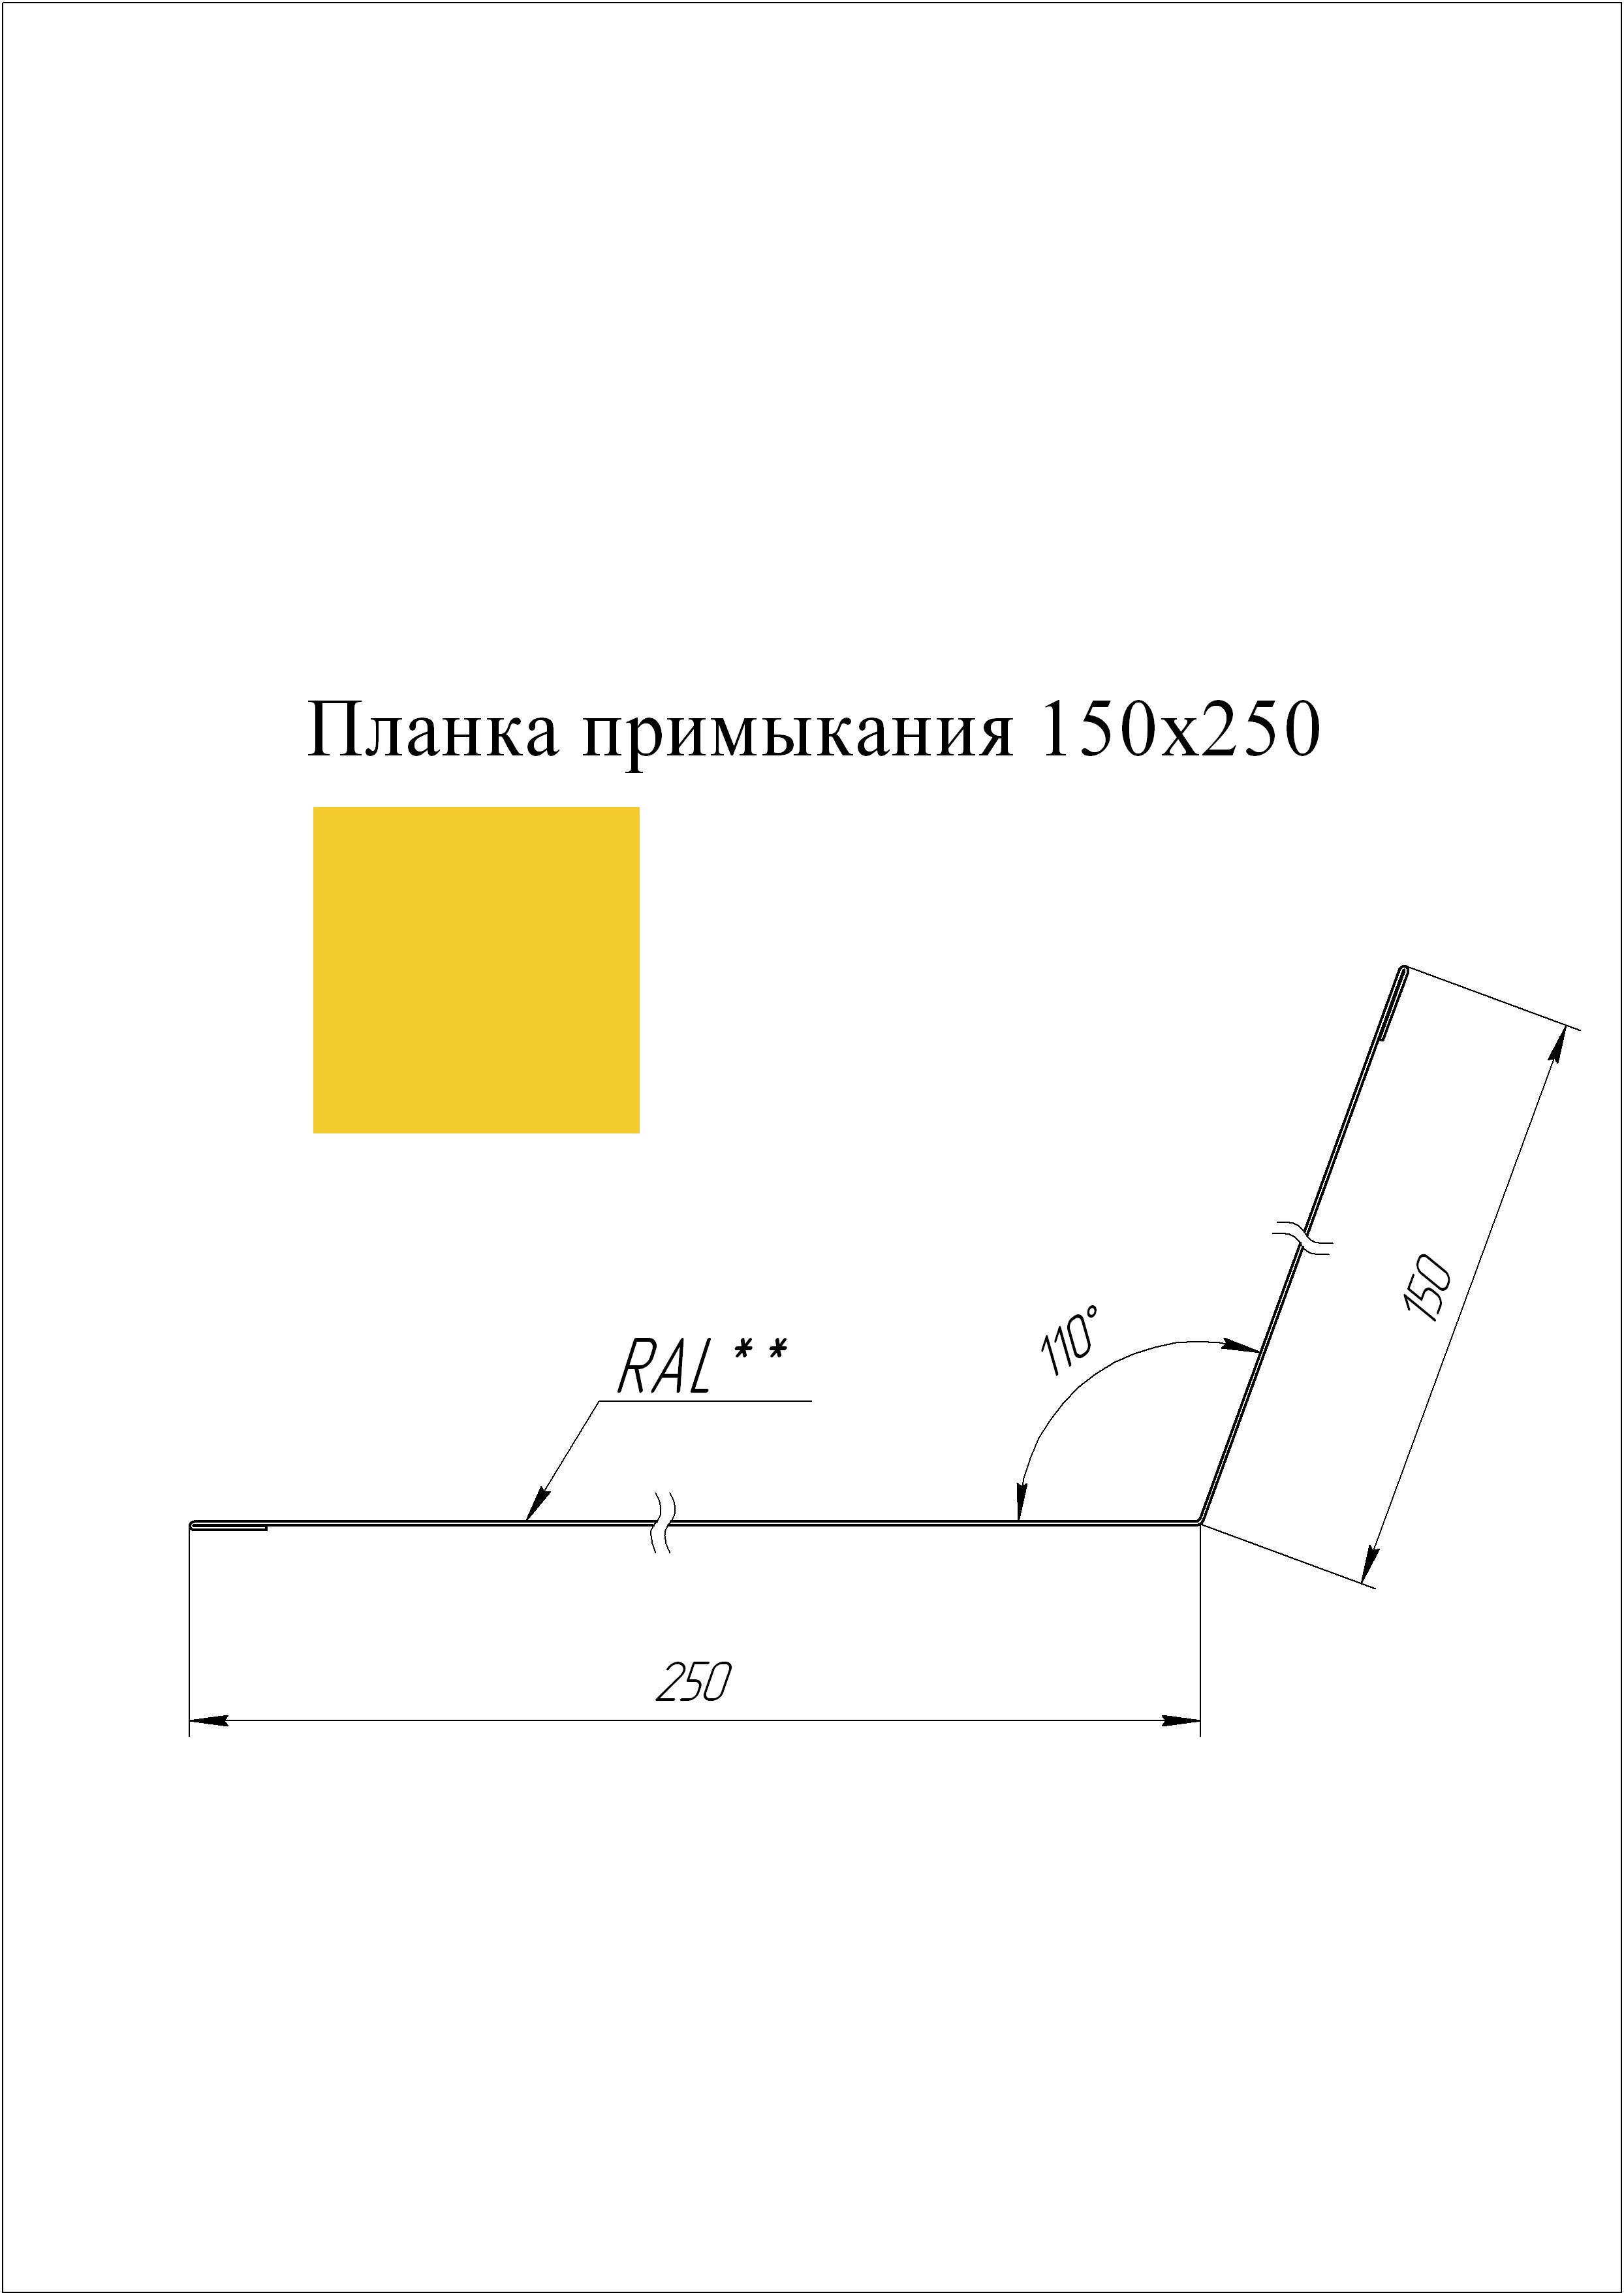 Планка примыкания 150*250 мм L=3 м GL PE-полиэстер 0,45 RAL 1018 - желтый цинк